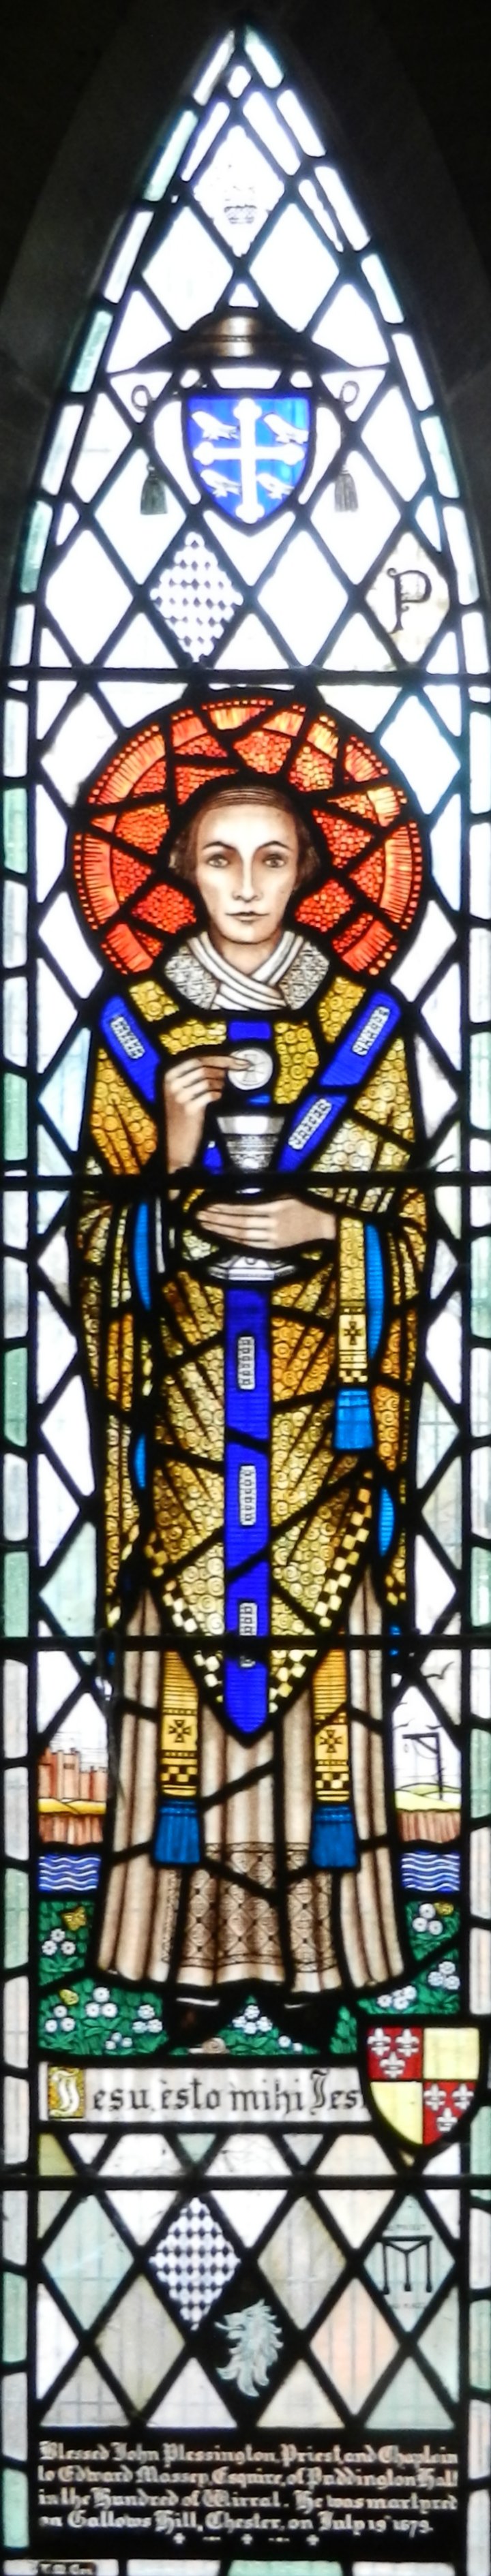 St John Plessington